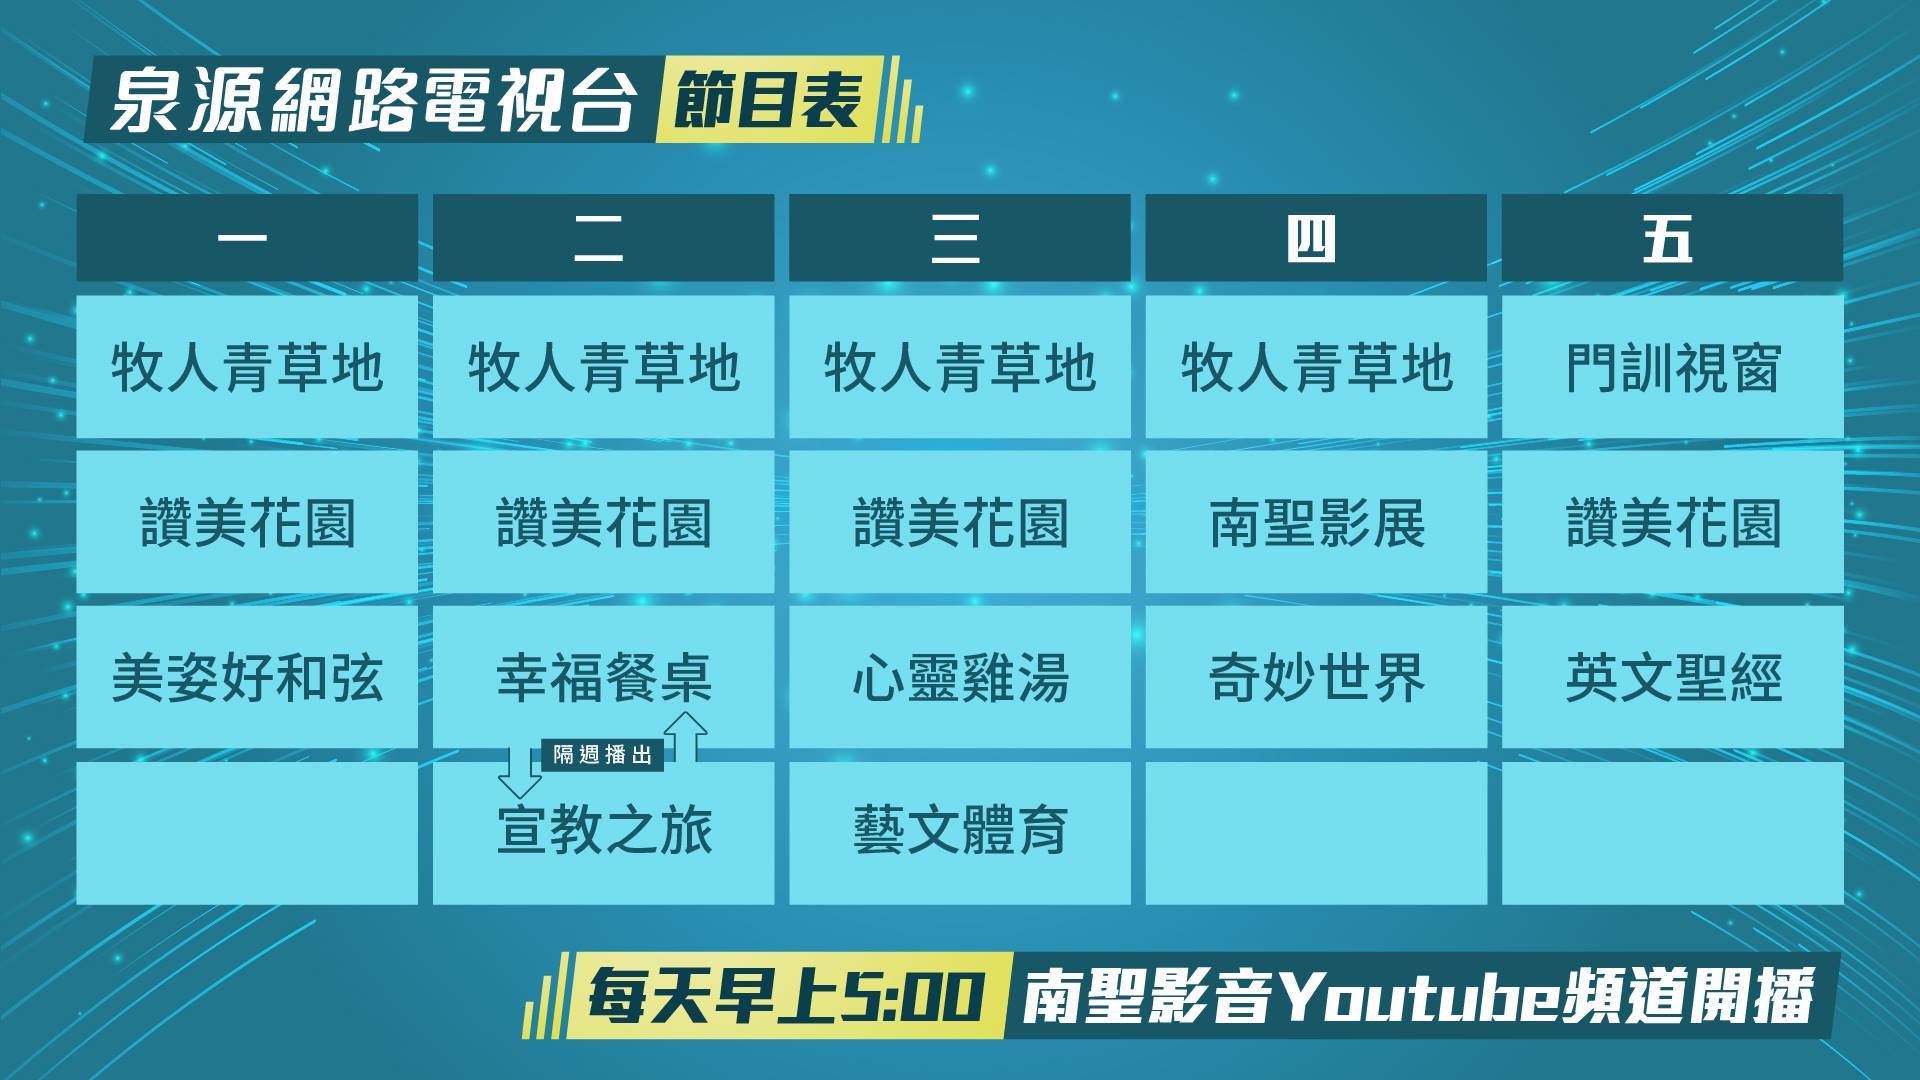 泉源網路電視台節目表。